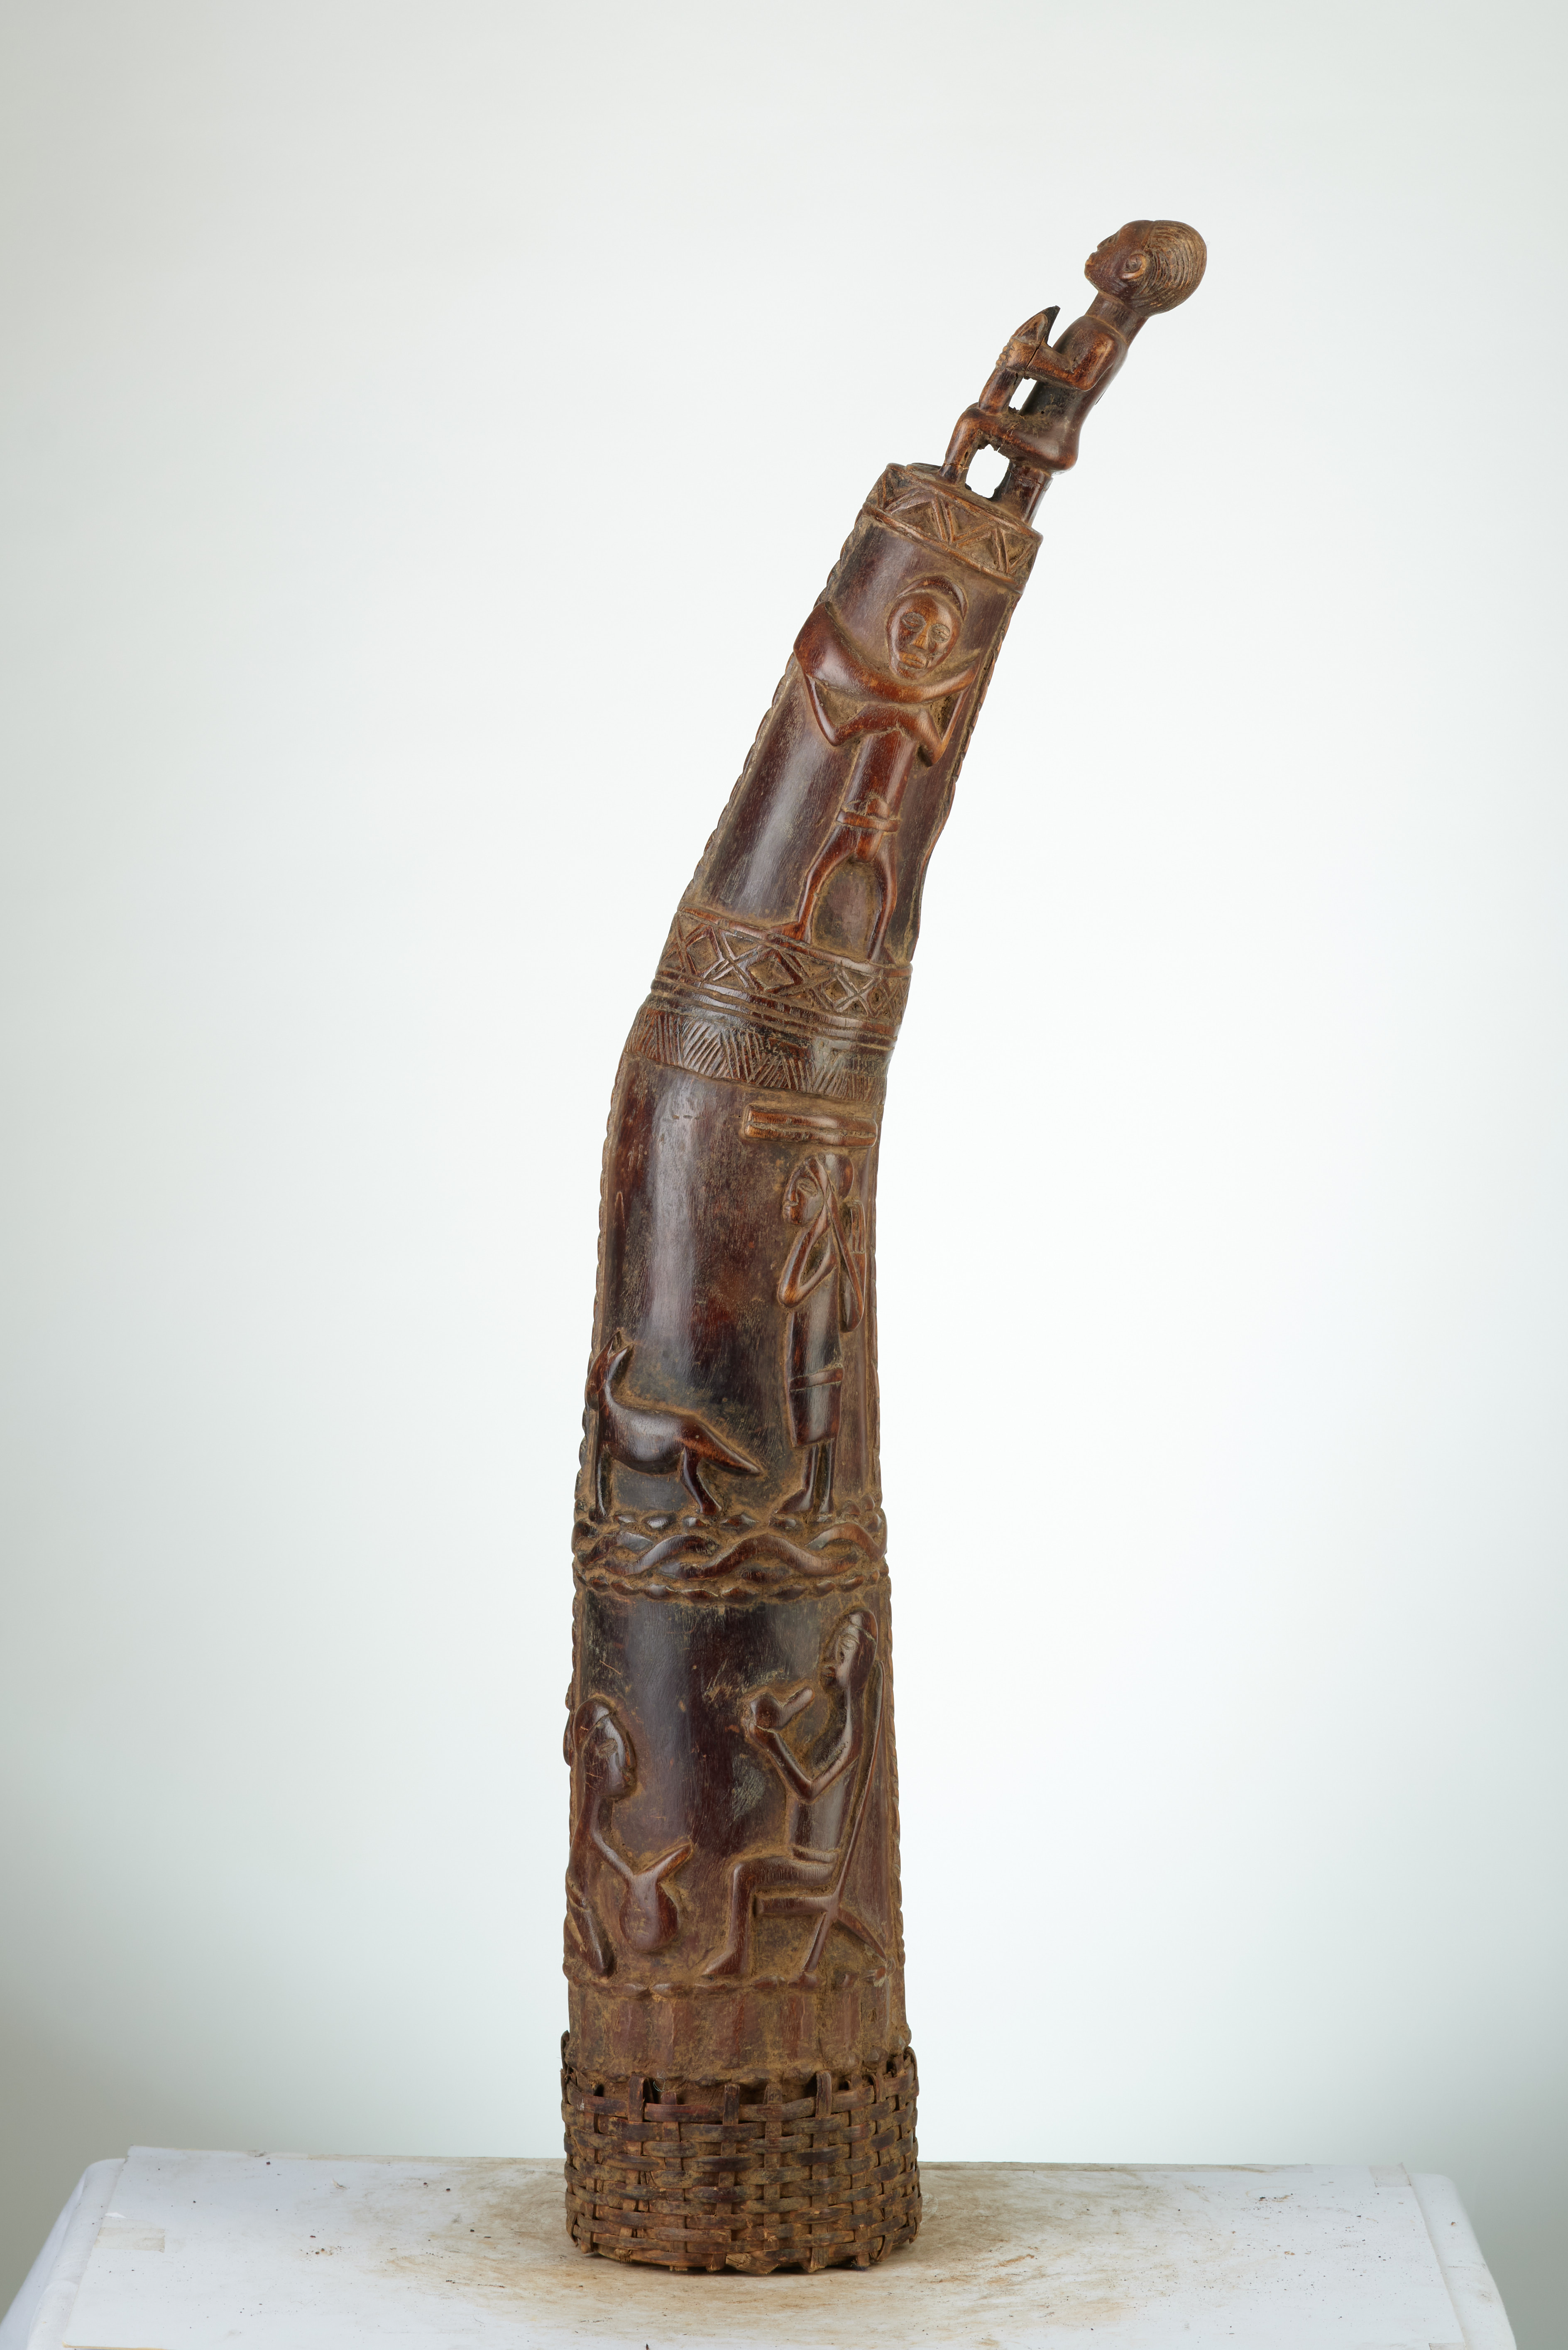 kongo ((trompe en bois), d`afrique : rep.dem.Congo, statuette kongo ((trompe en bois), masque ancien africain kongo ((trompe en bois), art du rep.dem.Congo - Art Africain, collection privées Belgique. Statue africaine de la tribu des kongo ((trompe en bois), provenant du rep.dem.Congo, °1885:Splendide et exceptionele Trompe sculptée en bois au royaume KONGO.La base renforcée avec un treillis en raphia .En haut le roi assis avec ces attributs en mains,puis en descendant  des lézards,des musiciens et diférentes scènes de la vie sociale.Pièce unique
milieu du 20eme sc.(col.MINGA Zaire 1969) 

Uitzonderlijk en buitengewoon mooie hoorn in hout uitgesneden(gebeeldhouwd)in het koninkrijk Kongo. De basis versterkt met een gevlochten netwerk in raffia. Bovenaan zit de koning met zijn attributen in de handen.Zakkend dan hagedissen,  muziekanten,beelden van het sociaal leven.Enig en prachtig stuk. midden 20ste eeuw.(kol.MINGA Zaire 1969.). art,culture,masque,statue,statuette,pot,ivoire,exposition,expo,masque original,masques,statues,statuettes,pots,expositions,expo,masques originaux,collectionneur d`art,art africain,culture africaine,masque africain,statue africaine,statuette africaine,pot africain,ivoire africain,exposition africain,expo africain,masque origina africainl,masques africains,statues africaines,statuettes africaines,pots africains,expositions africaines,expo africaines,masques originaux  africains,collectionneur d`art africain